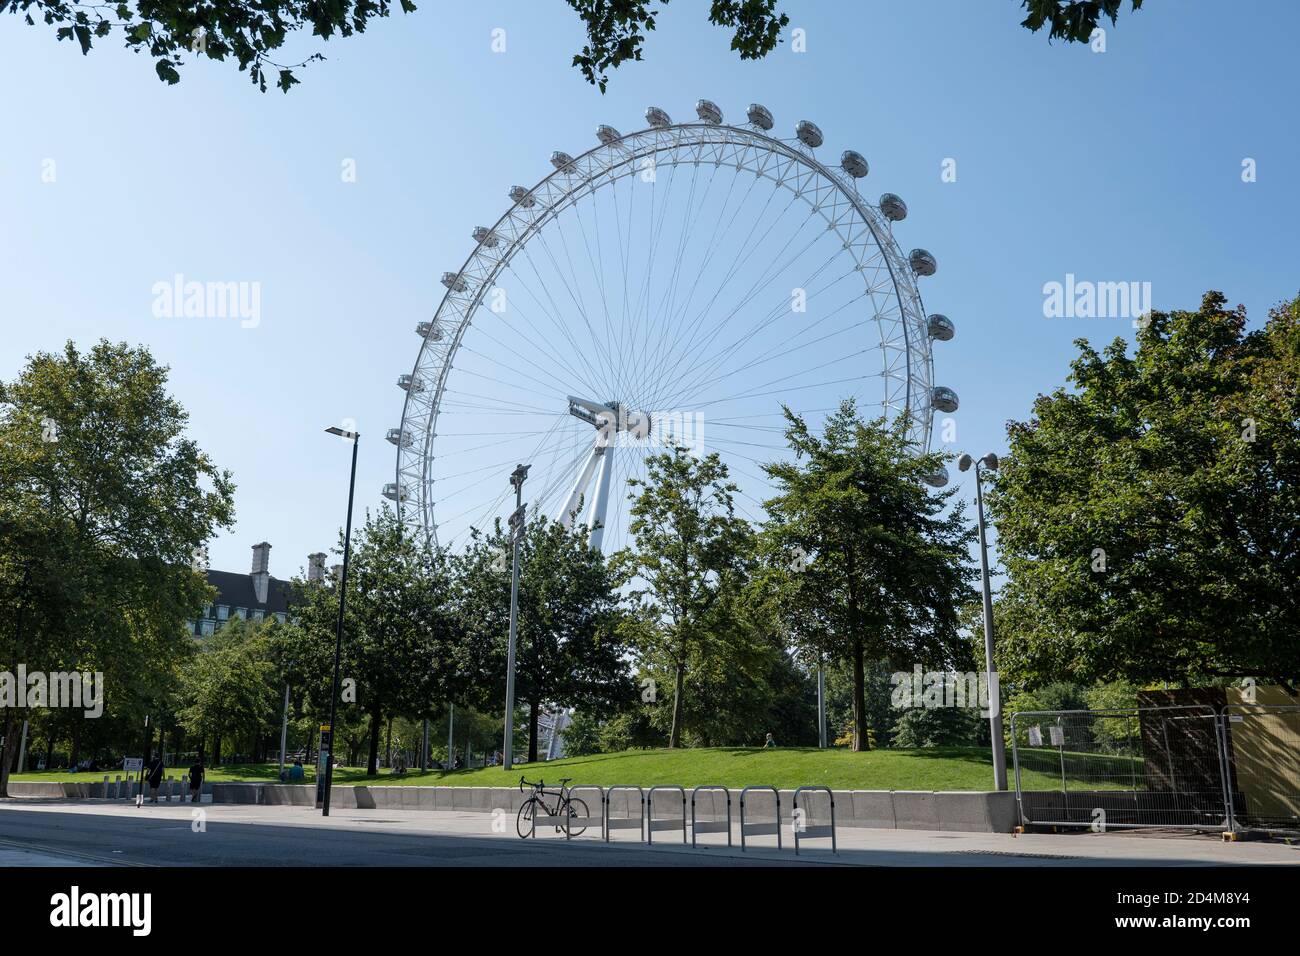 The London Eye au Jubilee Park and Garden le 14 septembre 2020 sur la rive sud au Royaume-Uni. Photo de Sam Mellish Banque D'Images